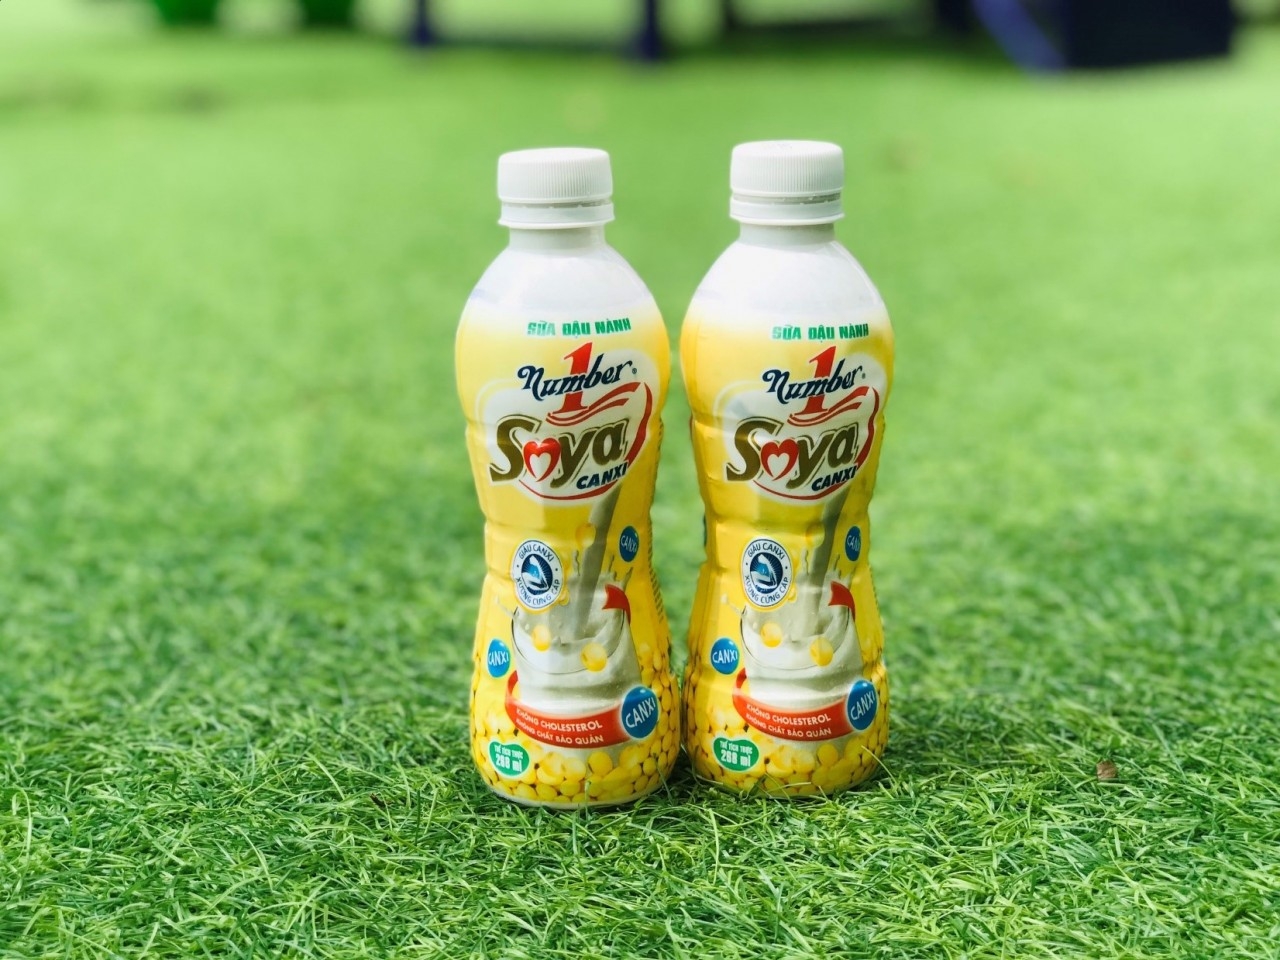 使用方便的新瓶装版Number 1 Soya Canxi豆奶产品。